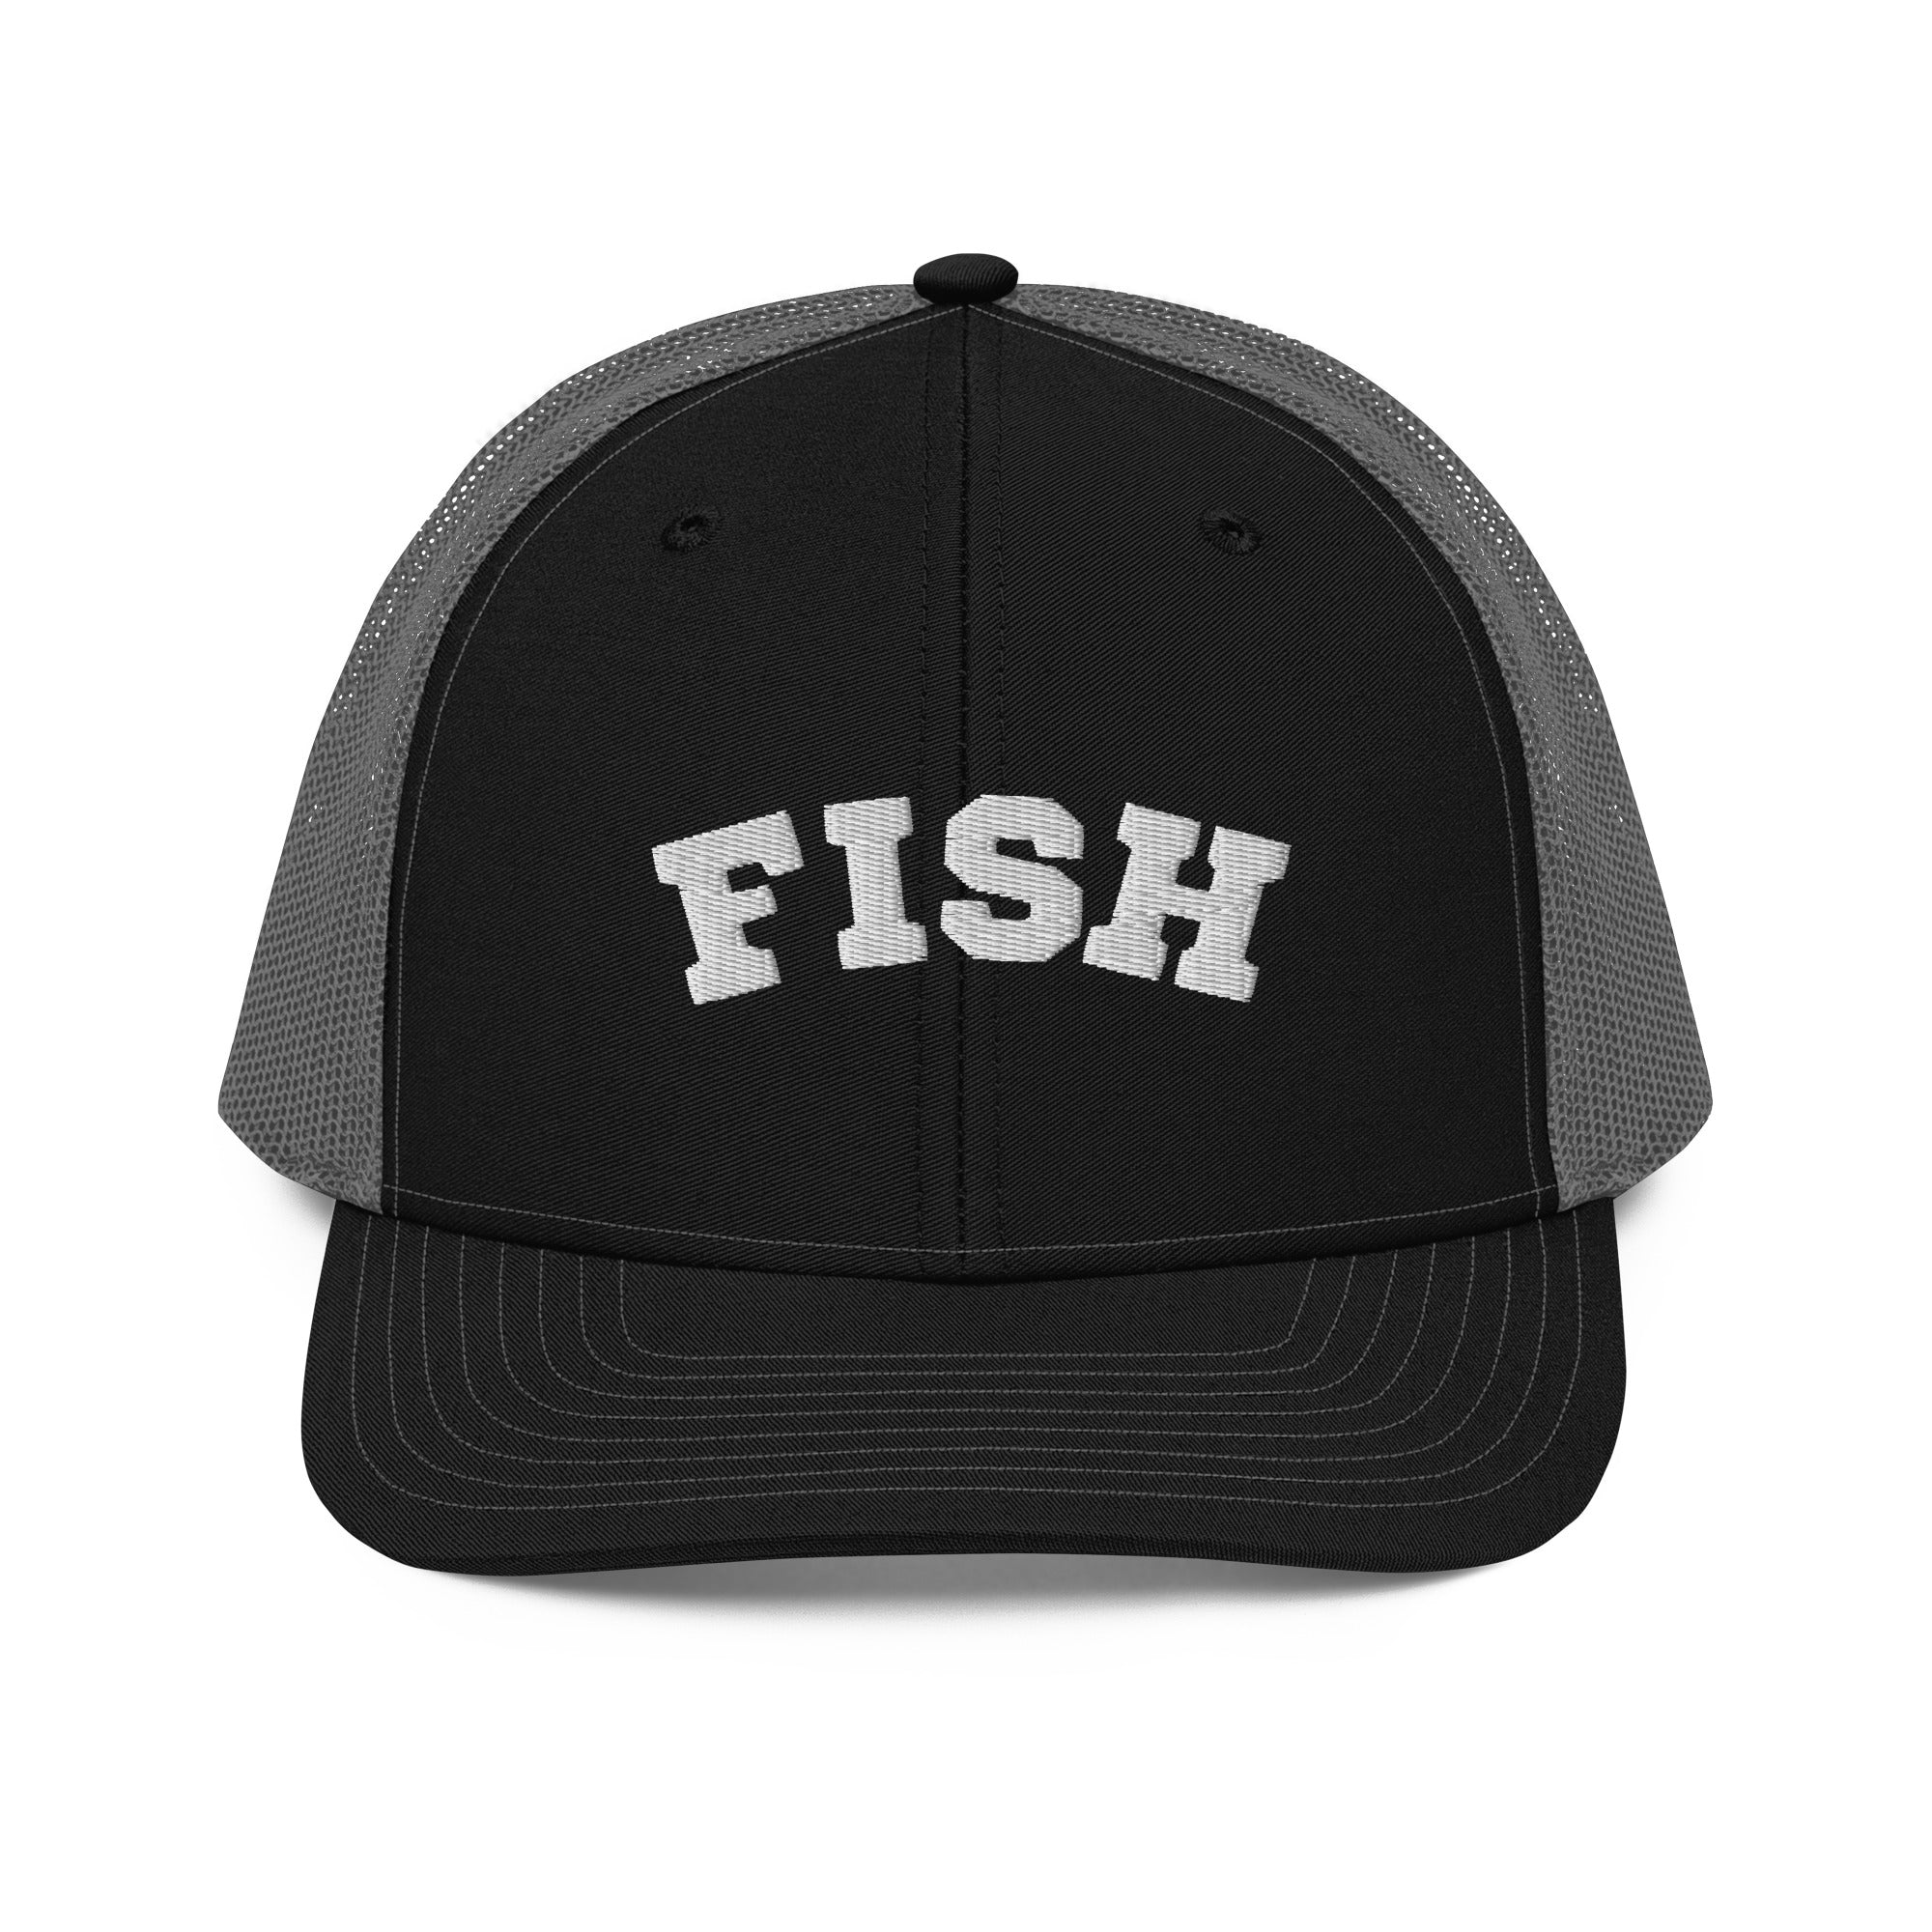 Fish Trucker Cap – University of Whitefish